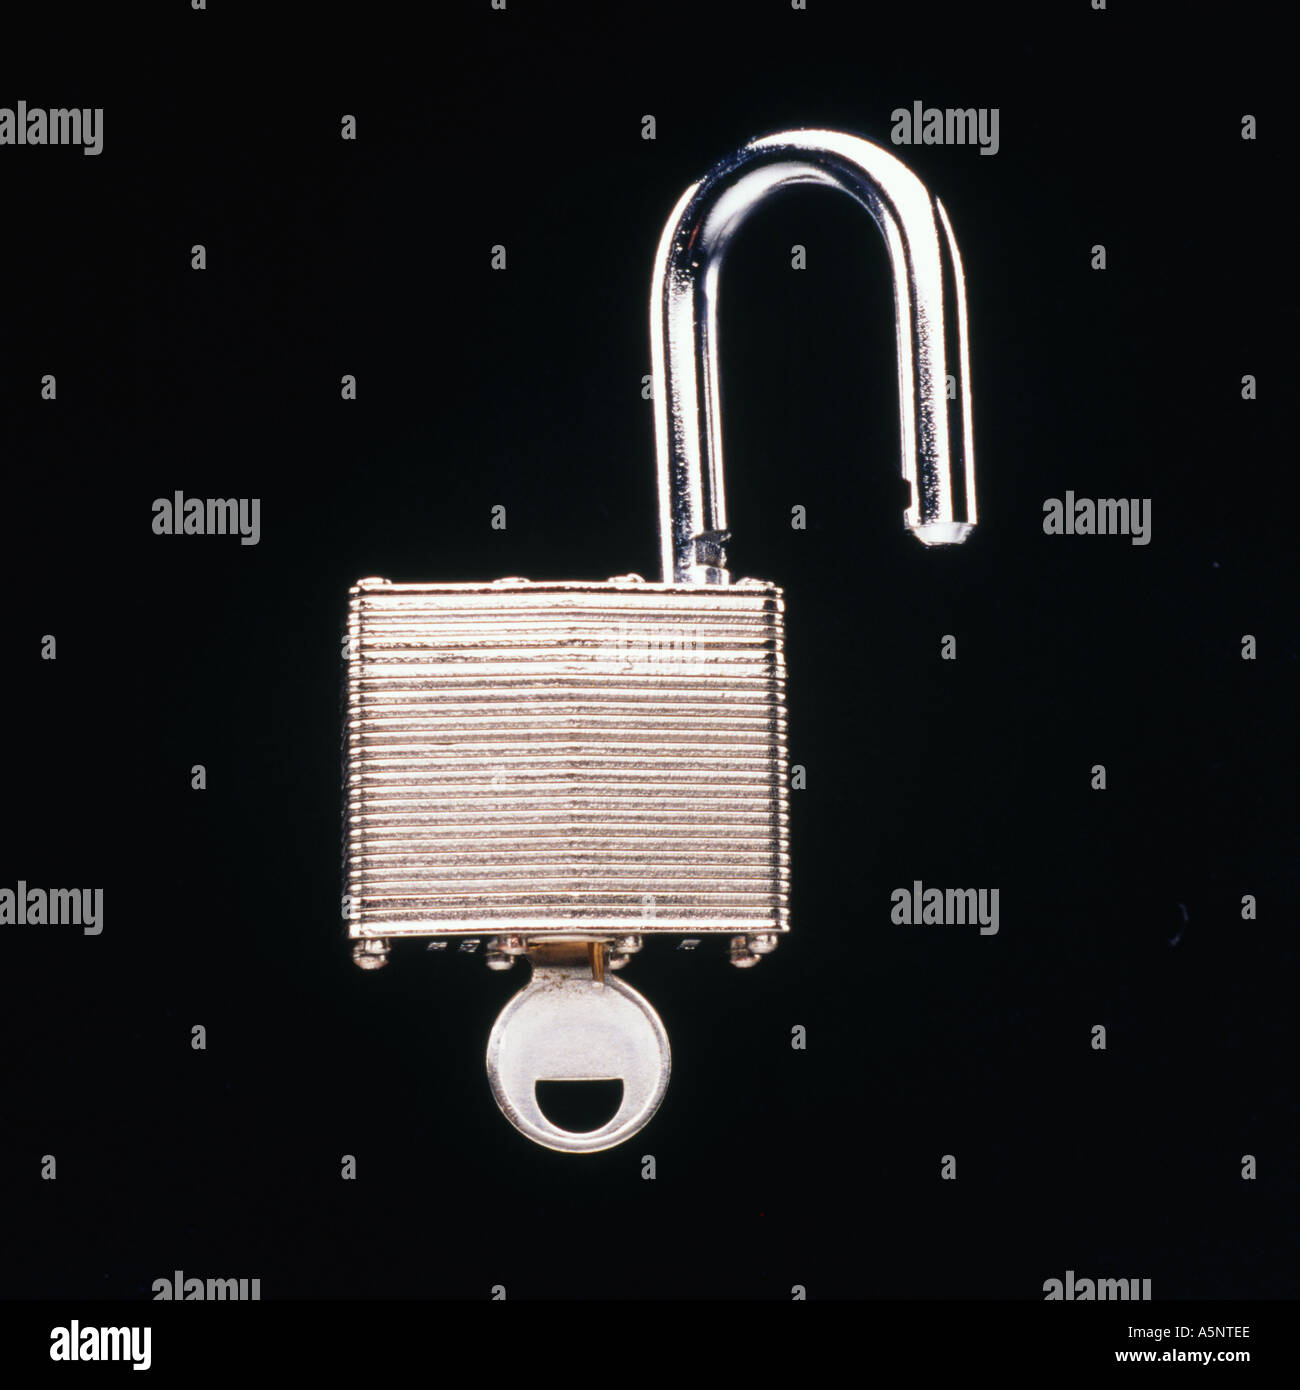 An unlocked padlock with key Stock Photo